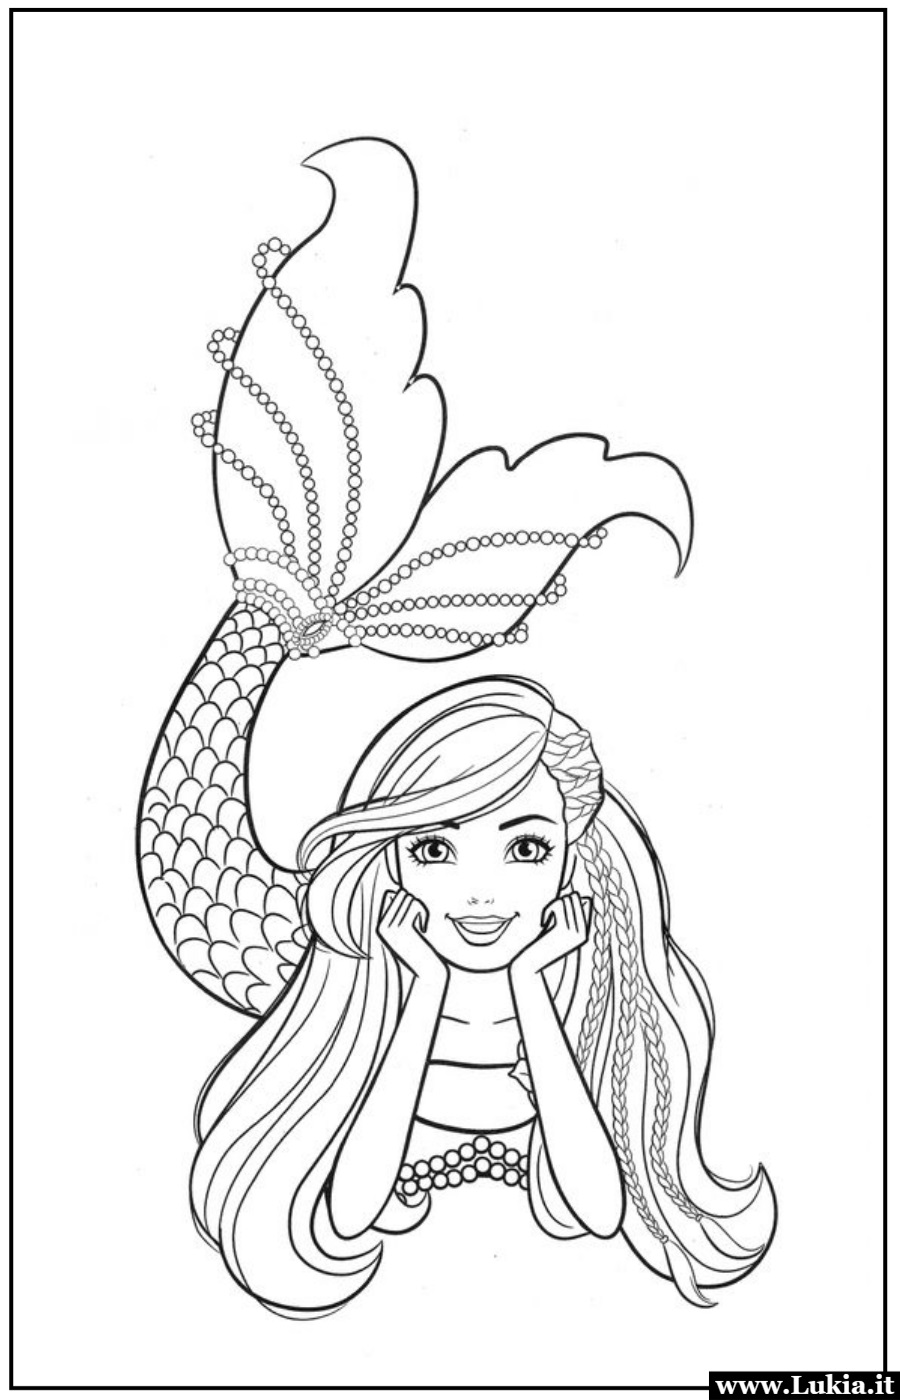 Barbie Sirenetta: un disegno da colorare per le piccole artiste Scopri l'affascinante disegno da colorare di Barbie Sirenetta, con una coda scintillante e un mare pieno di colori! Divertimento e creatività per le piccole artiste! - Immagini gratis